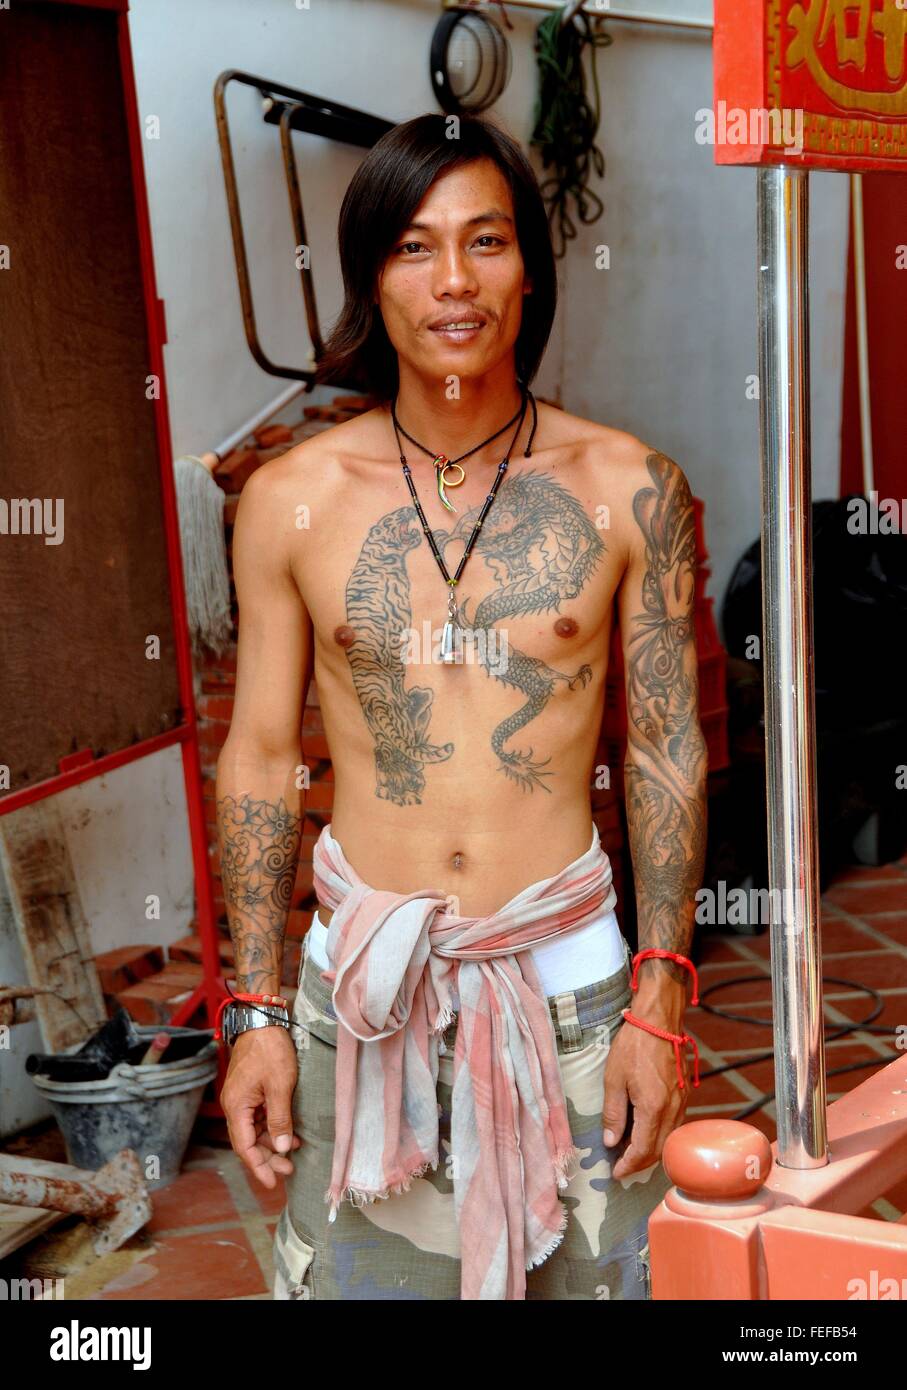 La ville de Phuket, Thaïlande : Thai ouvrier de construction avec plusieurs tatouages sur sa poitrine et bras Banque D'Images